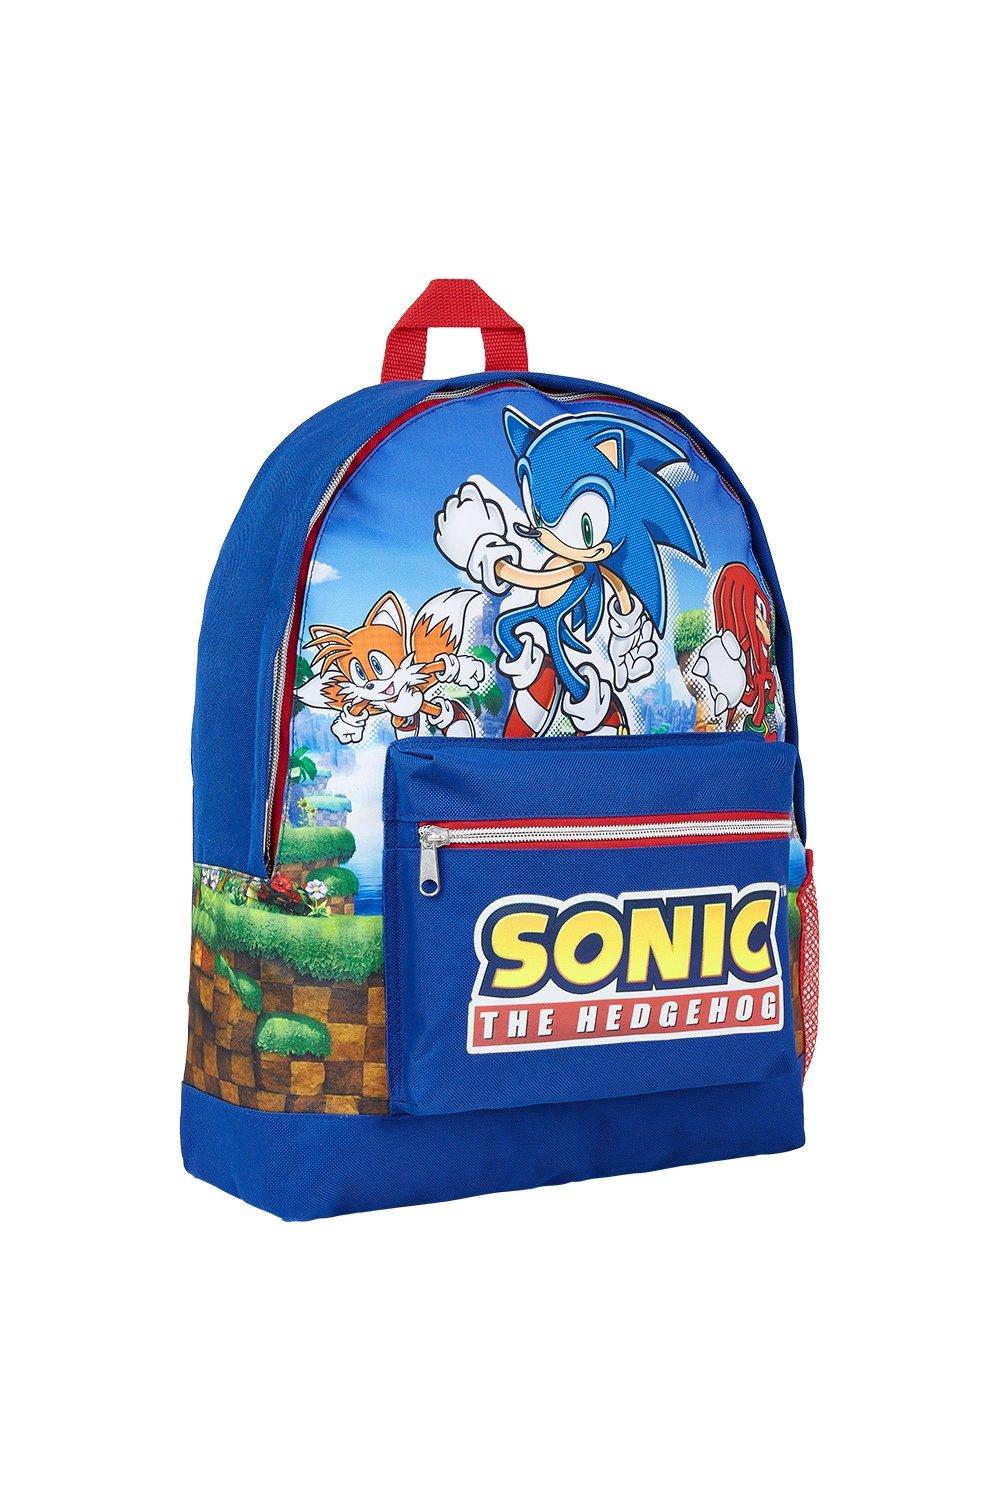 Рюкзак большой емкости Sonic the Hedgehog, синий рюкзак dark soul с надписью хвалю солнца для девочек и мальчиков дорожные рюкзаки рюкзаки для подростков школьная сумка